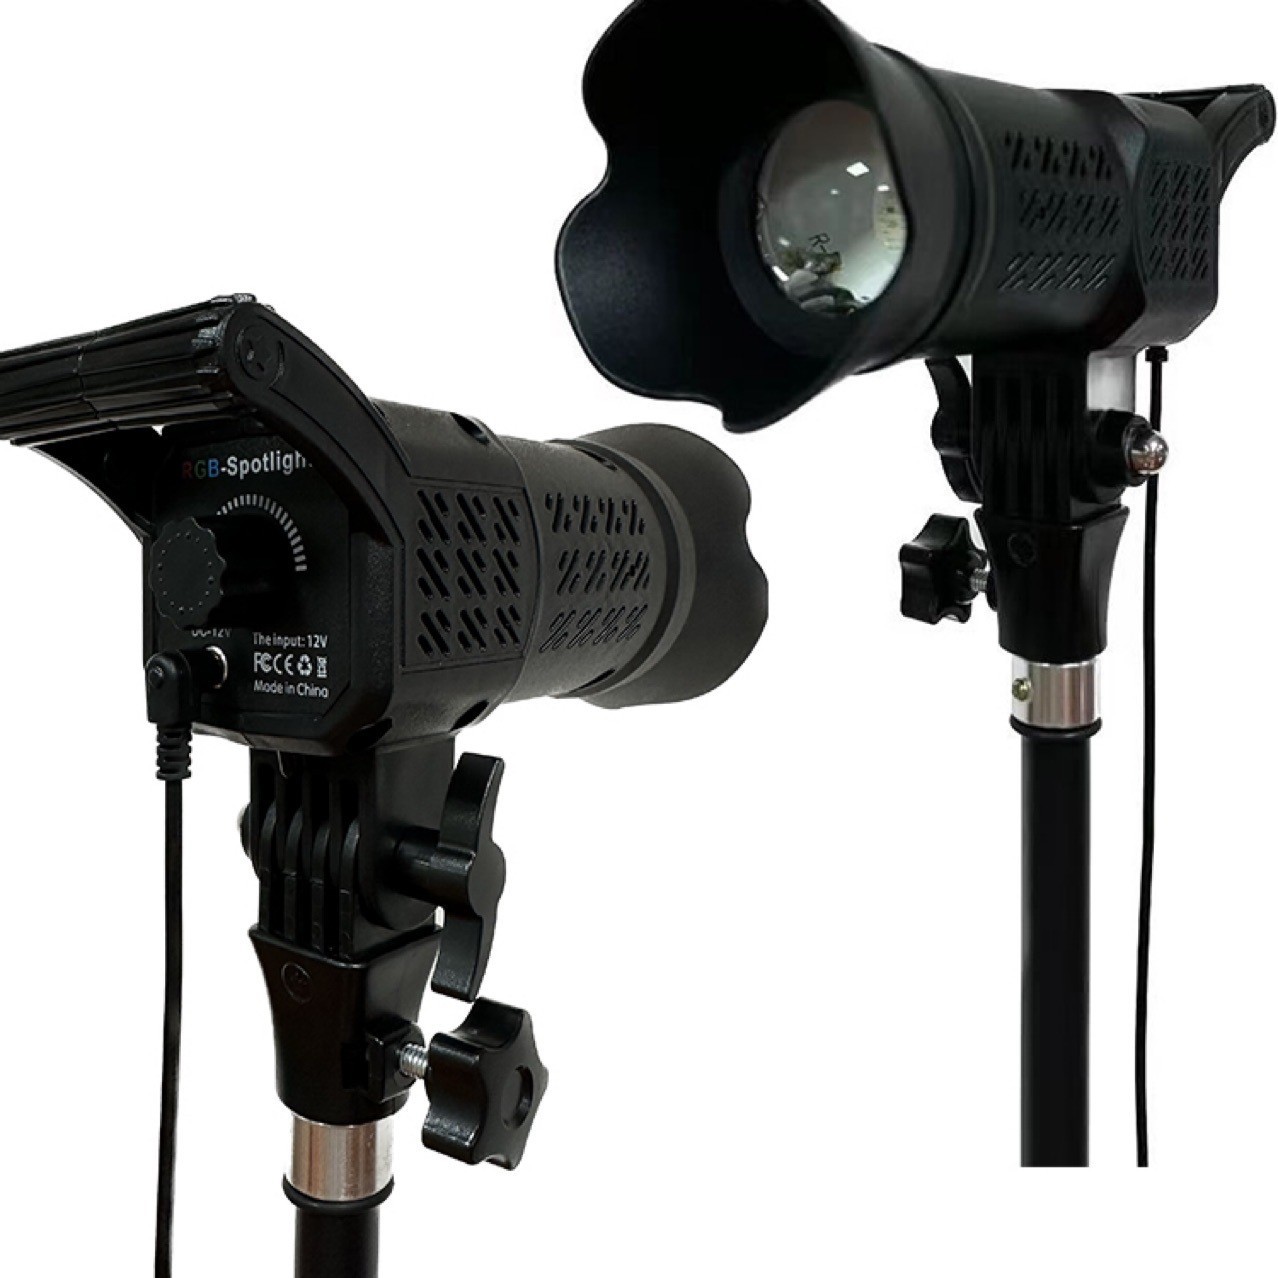 Đèn Studio RGB FSD-168 Gỉa Nắng Chỉnh Màu Spotlight chụp hình quay phim